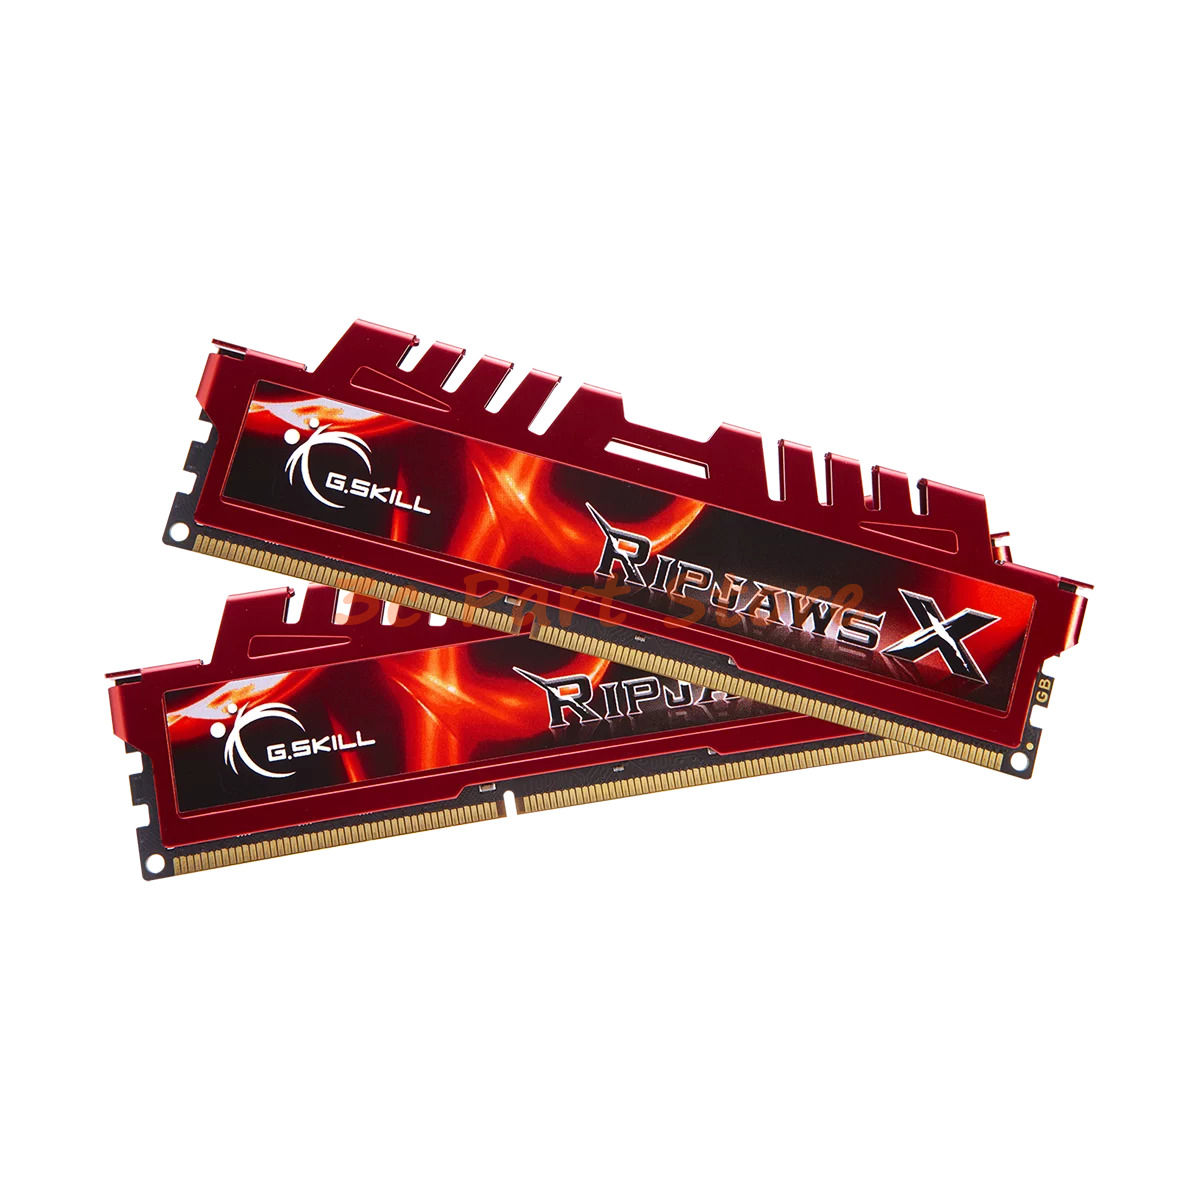 G.SKILL Ripjaws X 16GB (2x8GB) 240-Pin PC DDR3 1600 PC3 12800 Desktop Memory Red